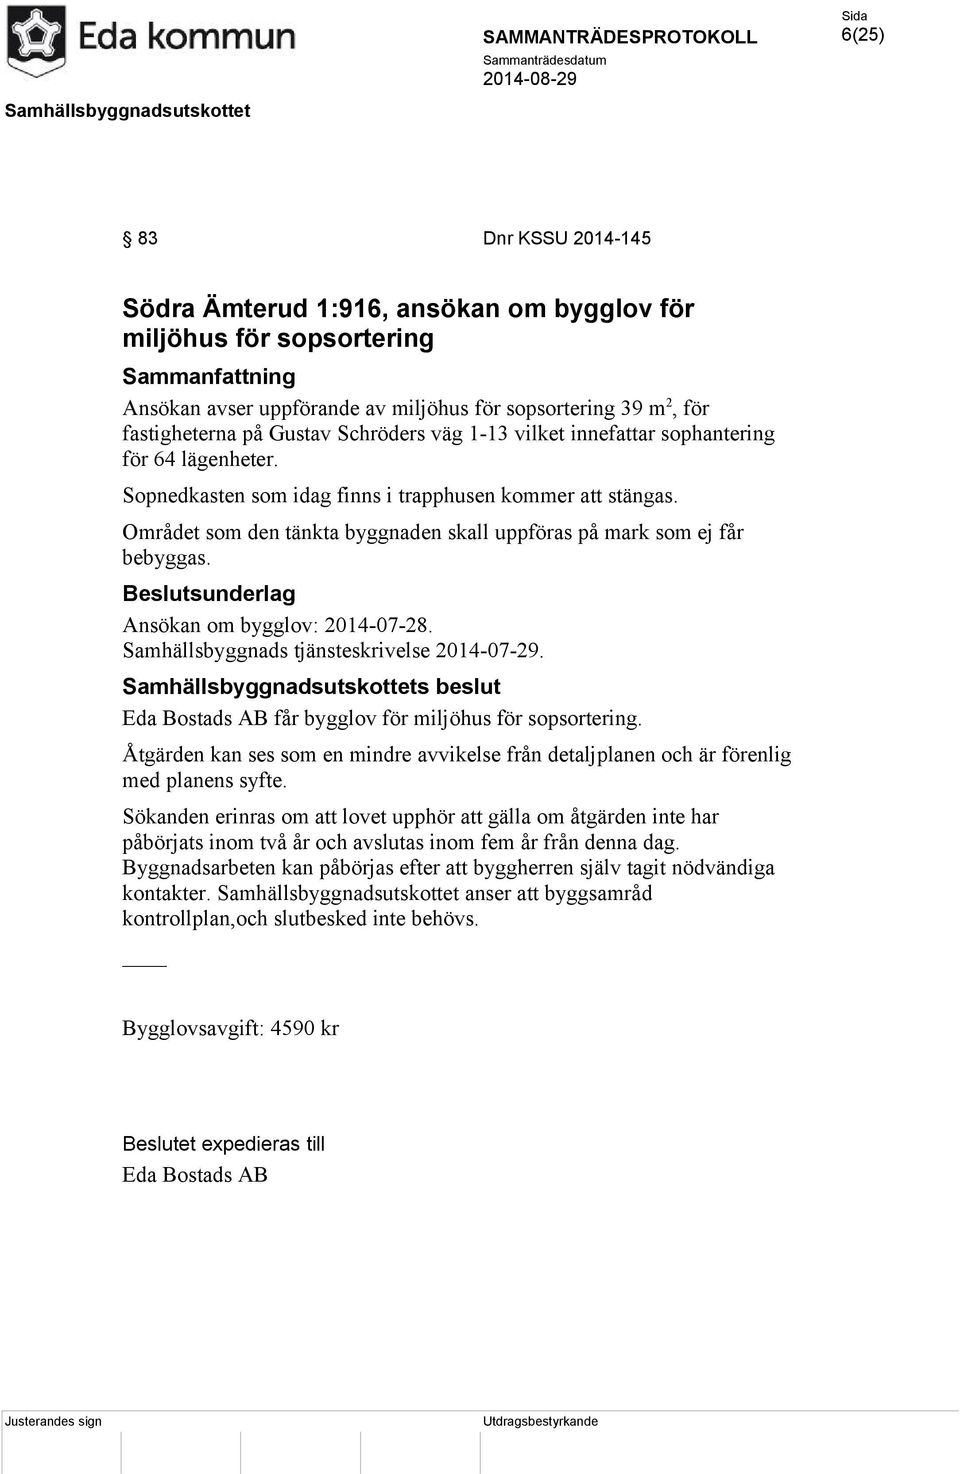 Ansökan om bygglov: 2014-07-28. Samhällsbyggnads tjänsteskrivelse 2014-07-29. Eda Bostads AB får bygglov för miljöhus för sopsortering.